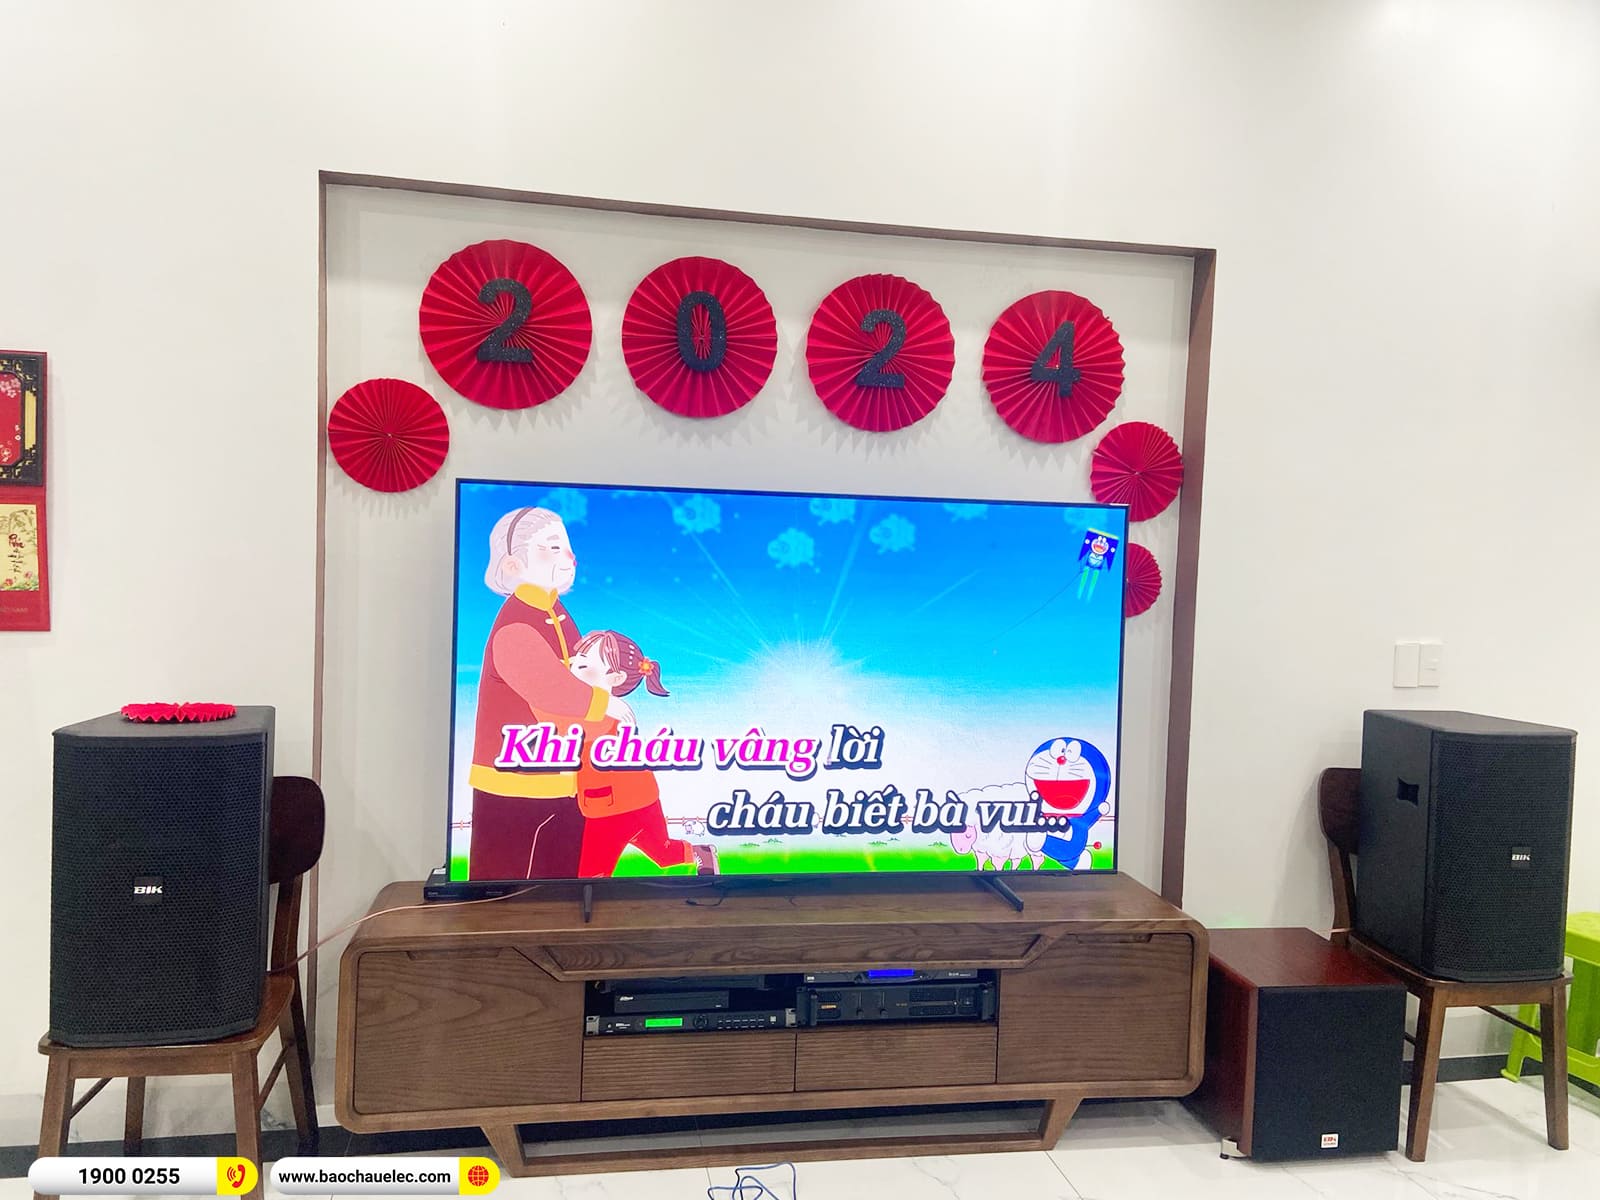 Lắp đặt dàn karaoke BIK gần 36tr cho chị Hương ở Hải Phòng